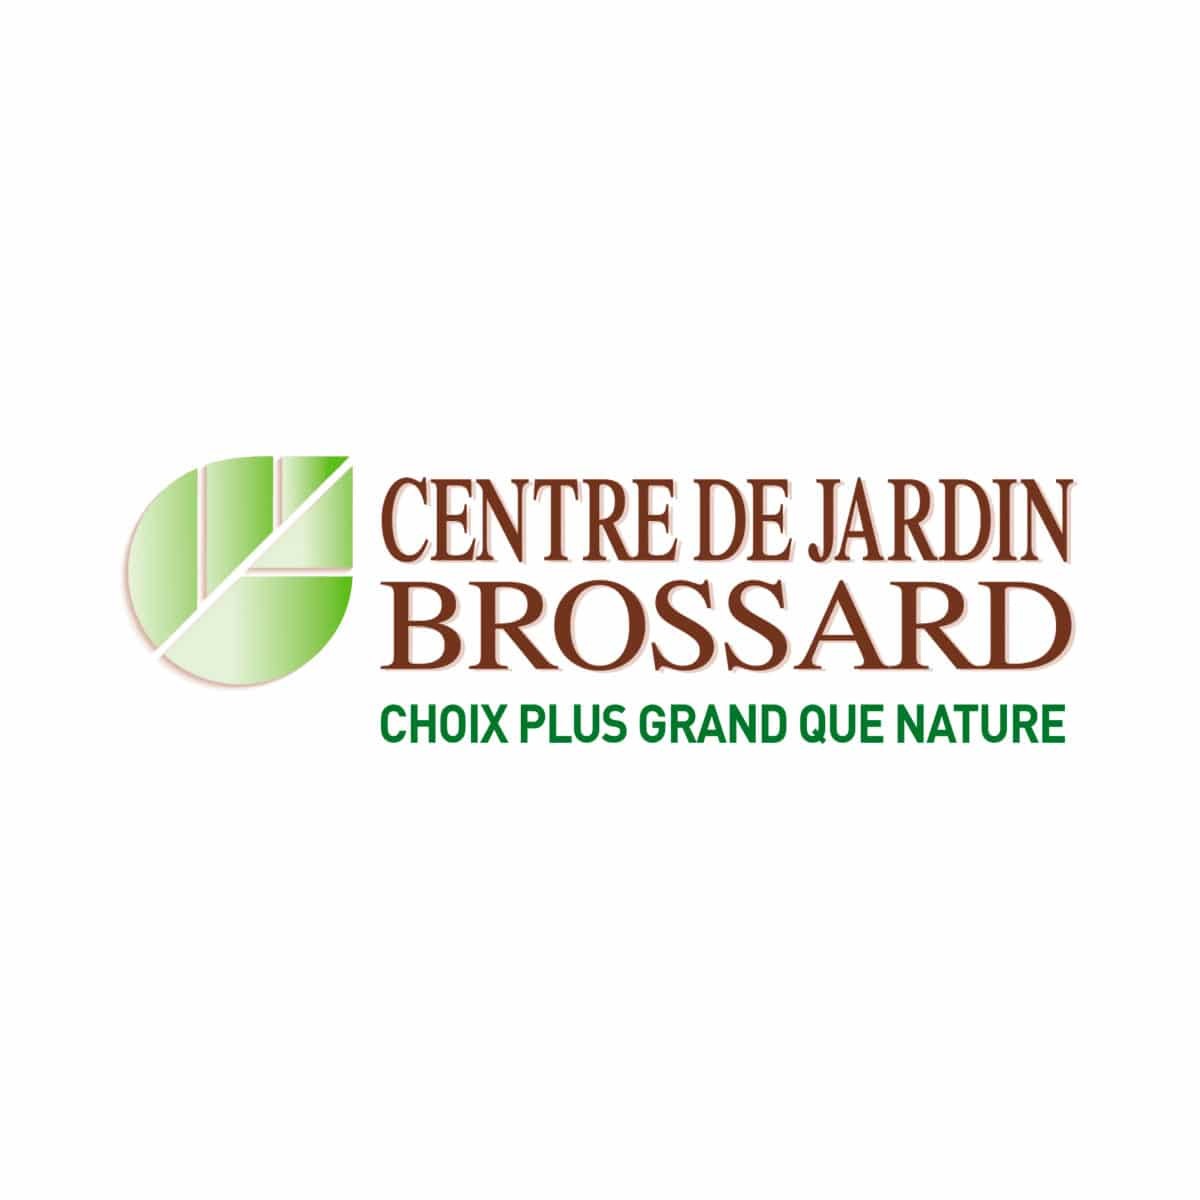 Visit Centre de Jardin Brossard Online